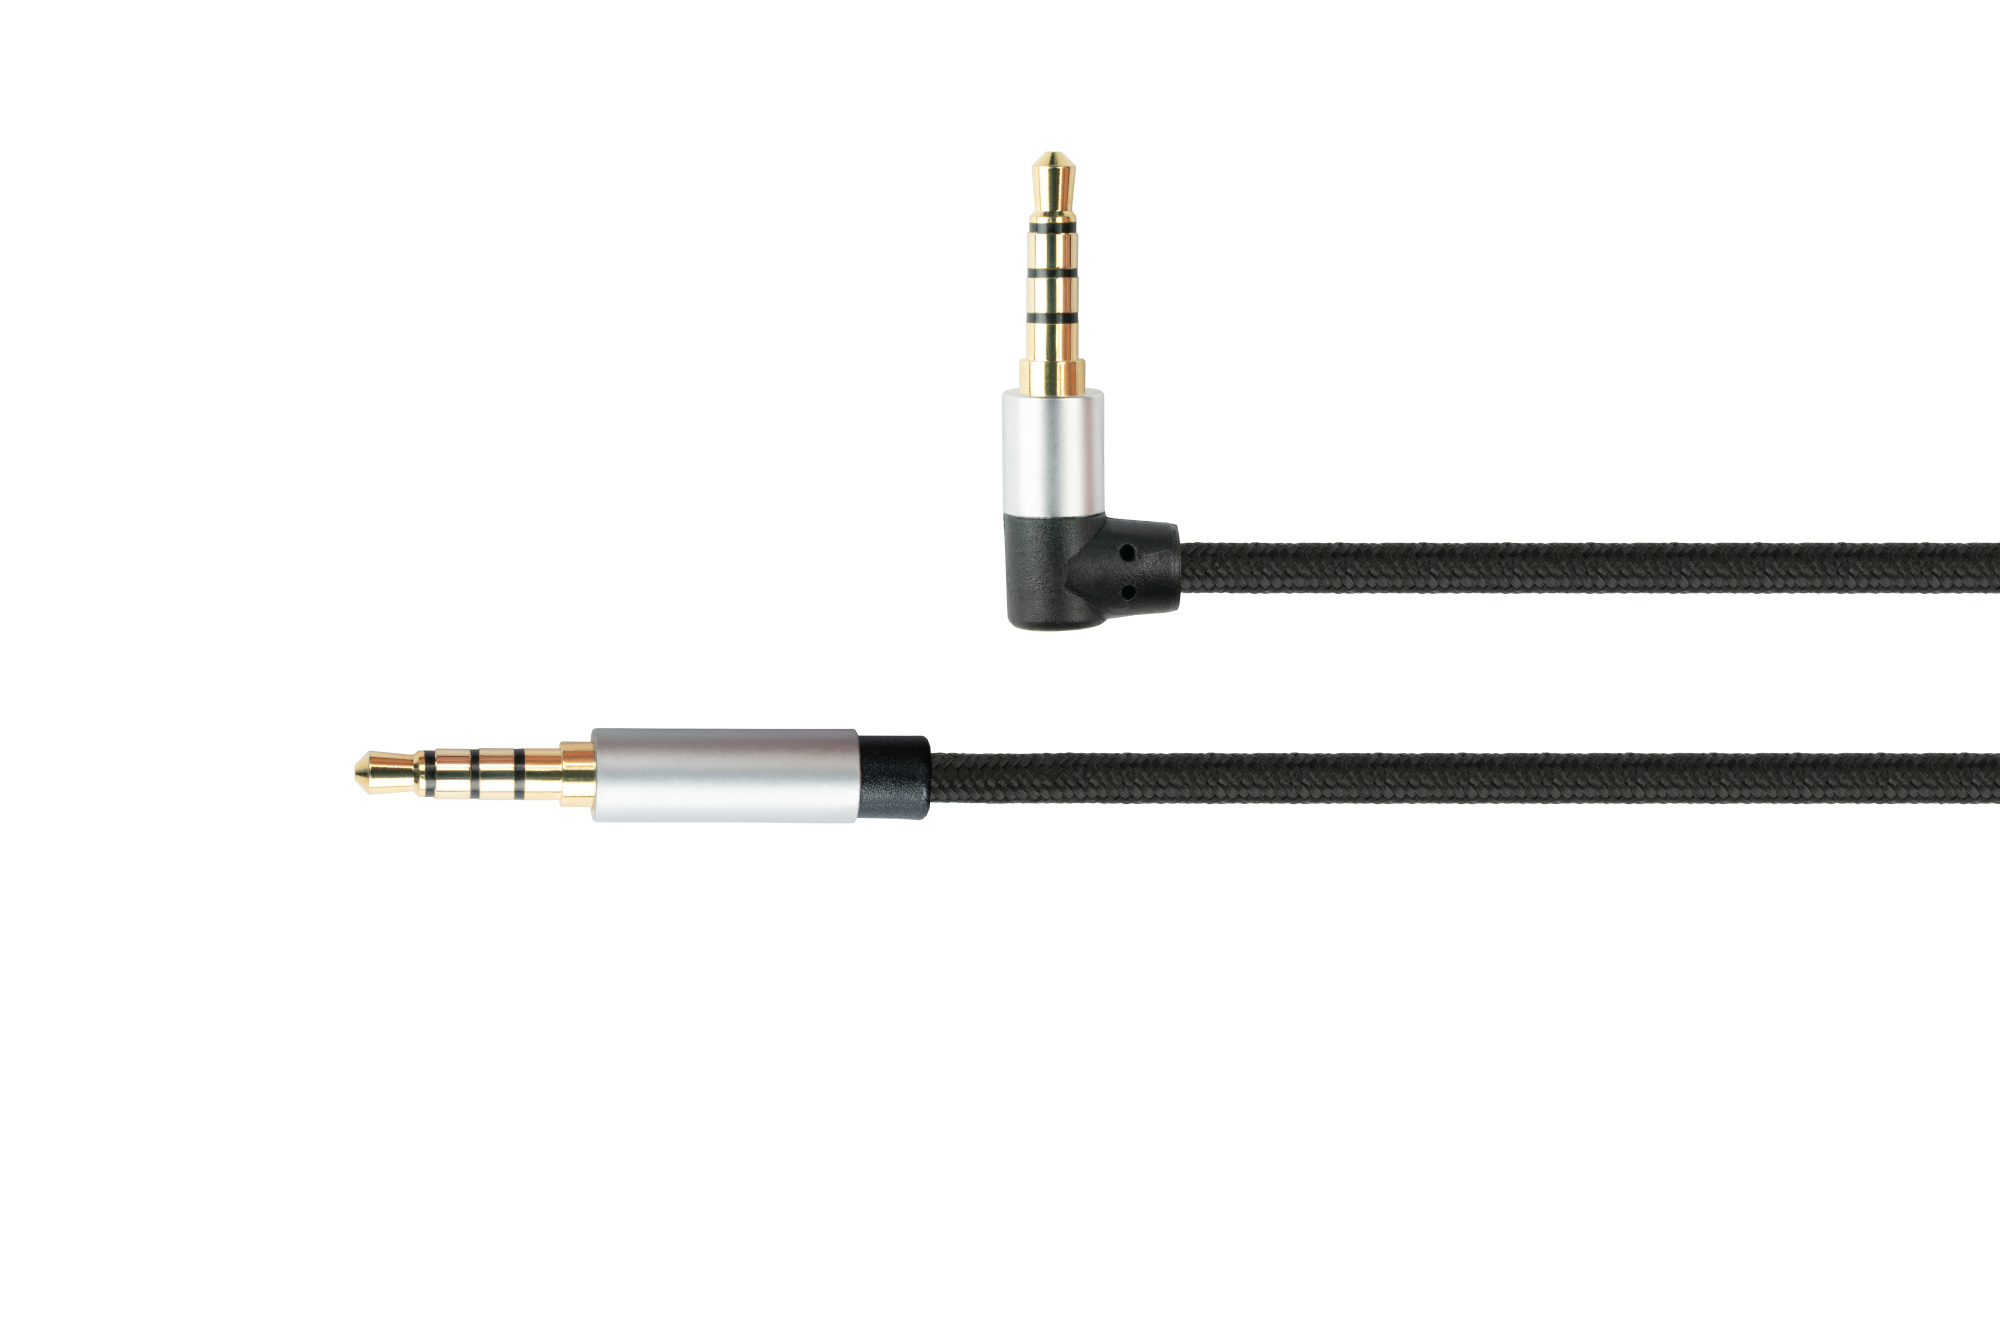 Audio Anschlusskabel High-Quality, 4-poliger 3,5mm Klinkenstecker an Klinkenstecker gewinkelt, Textilmantel, schwarz, 1,5m